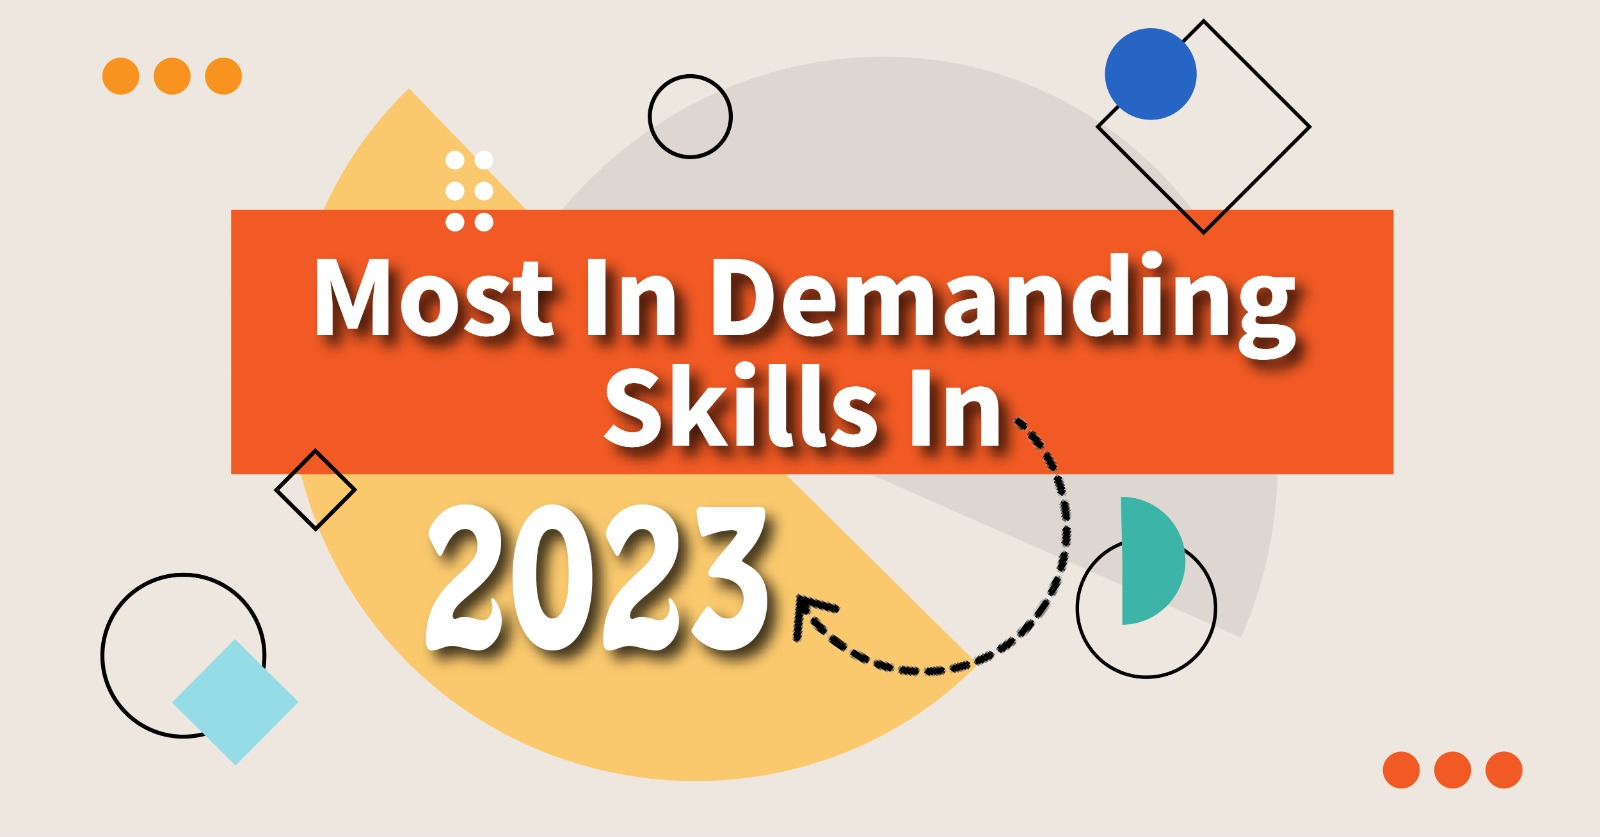 Most in Demanding Skills in 2023